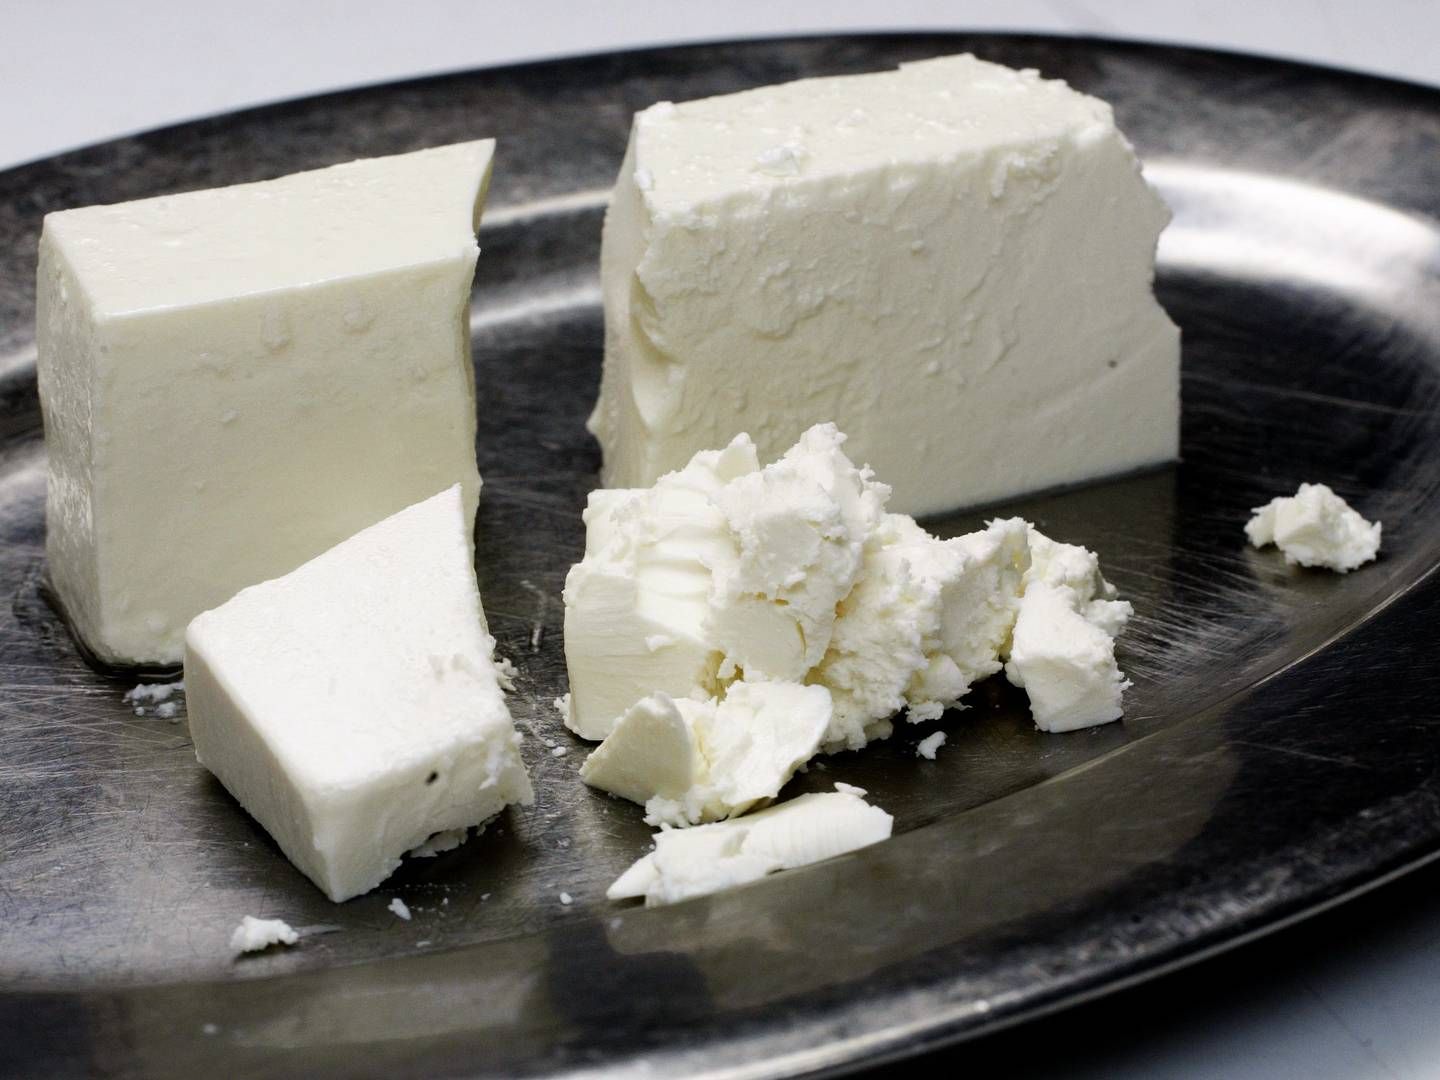 Grækenland og Cypern må kalde den hvide ost, der ofte bruges i salater, for feta. Det må danske mejerier, der producerer lignende ost ikke, selv om det eksporteres til tredjelande. | Foto: Miriam Dalsgaard